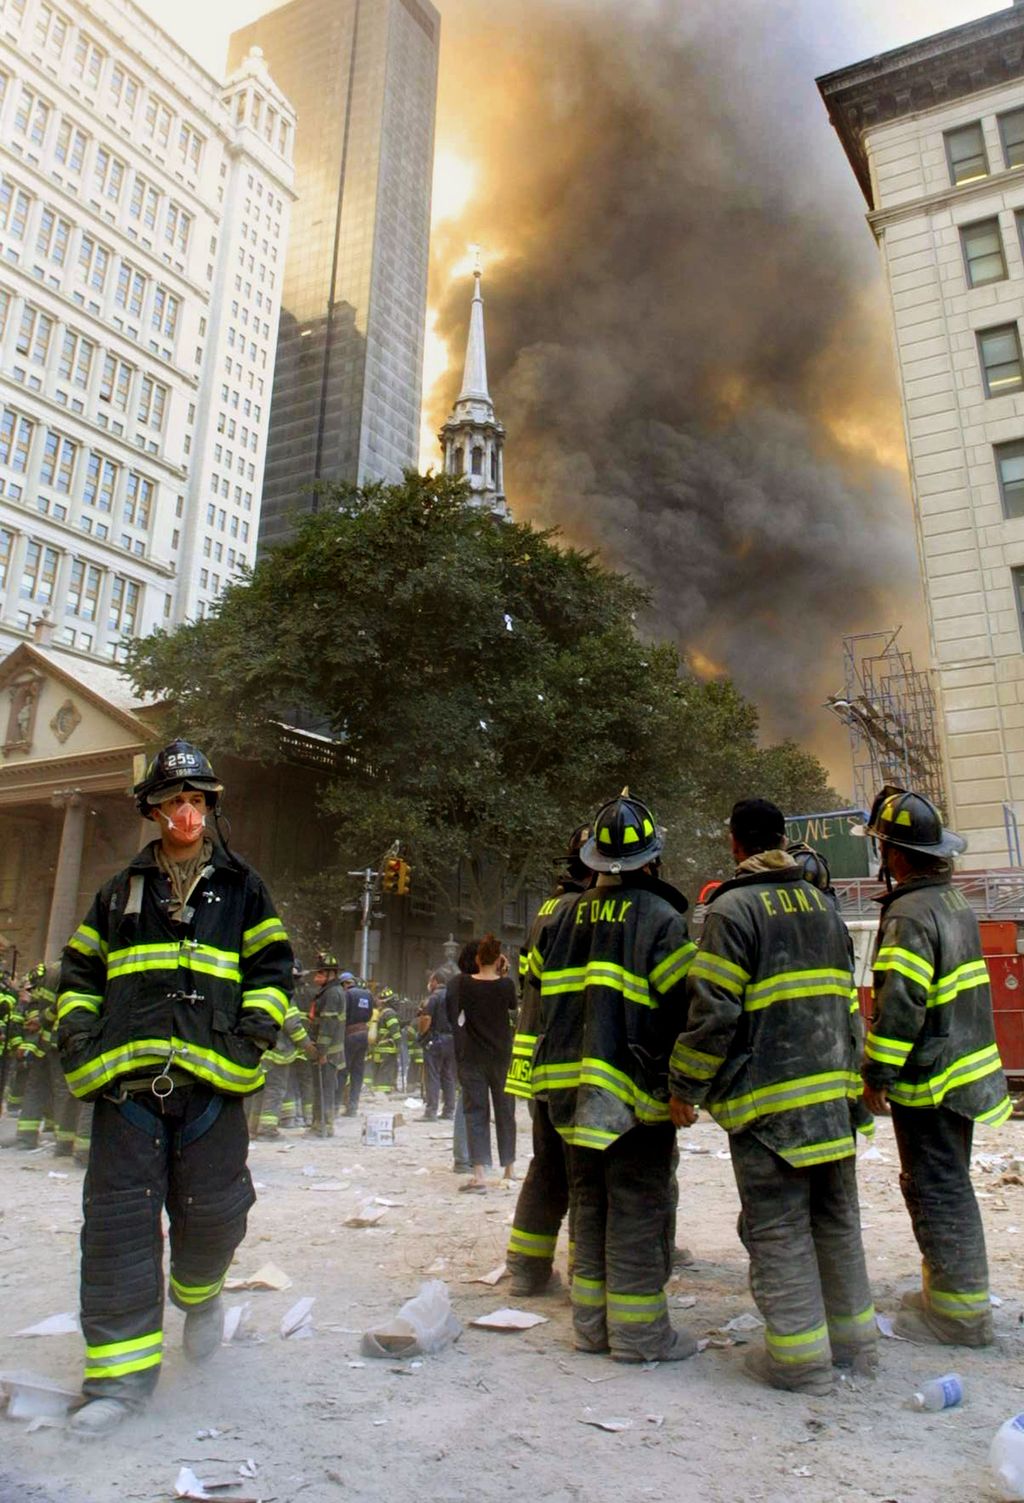 21 éve ezen a napon érte terrortámadás az Egyesült Államokat, terror, terrortámadás, támadás, repülőgép, terrorizmus, pusztítás, 911, 9/11, szeptember 11, Egyesült Államok, 